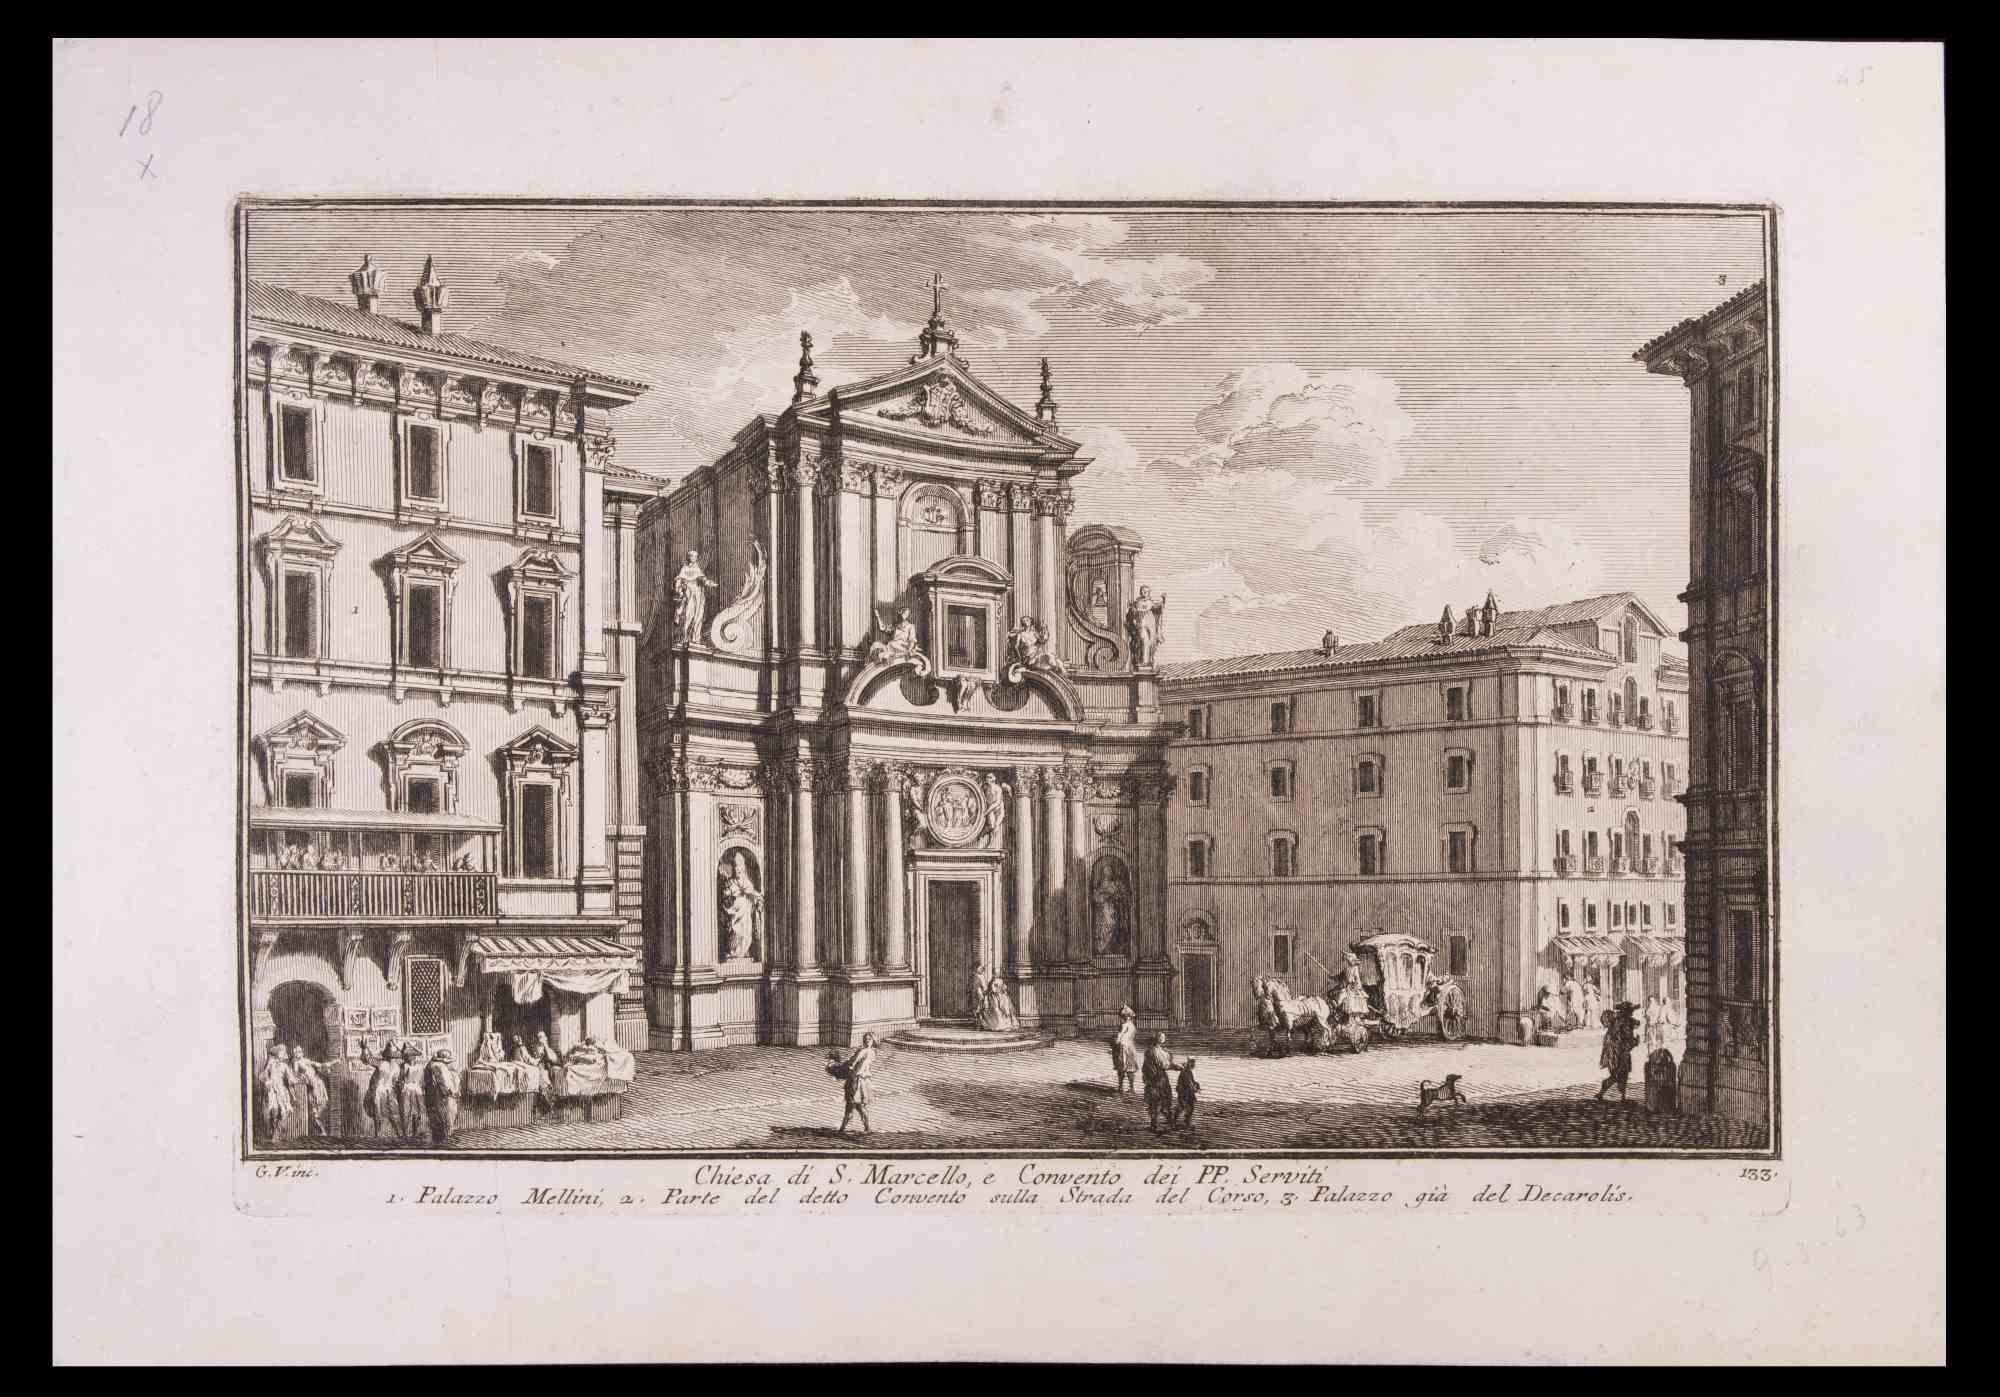 Chiesa di S. Marcello ist eine Schwarz-Weiß-Radierung aus dem späten 18. Jahrhundert von Giuseppe Vasi.

Signiert und betitelt am unteren Rand der Platte. 

Gute Bedingungen und gealterte Ränder mit einigen Stockflecken.

Giuseppe Vasi  (Corleone,